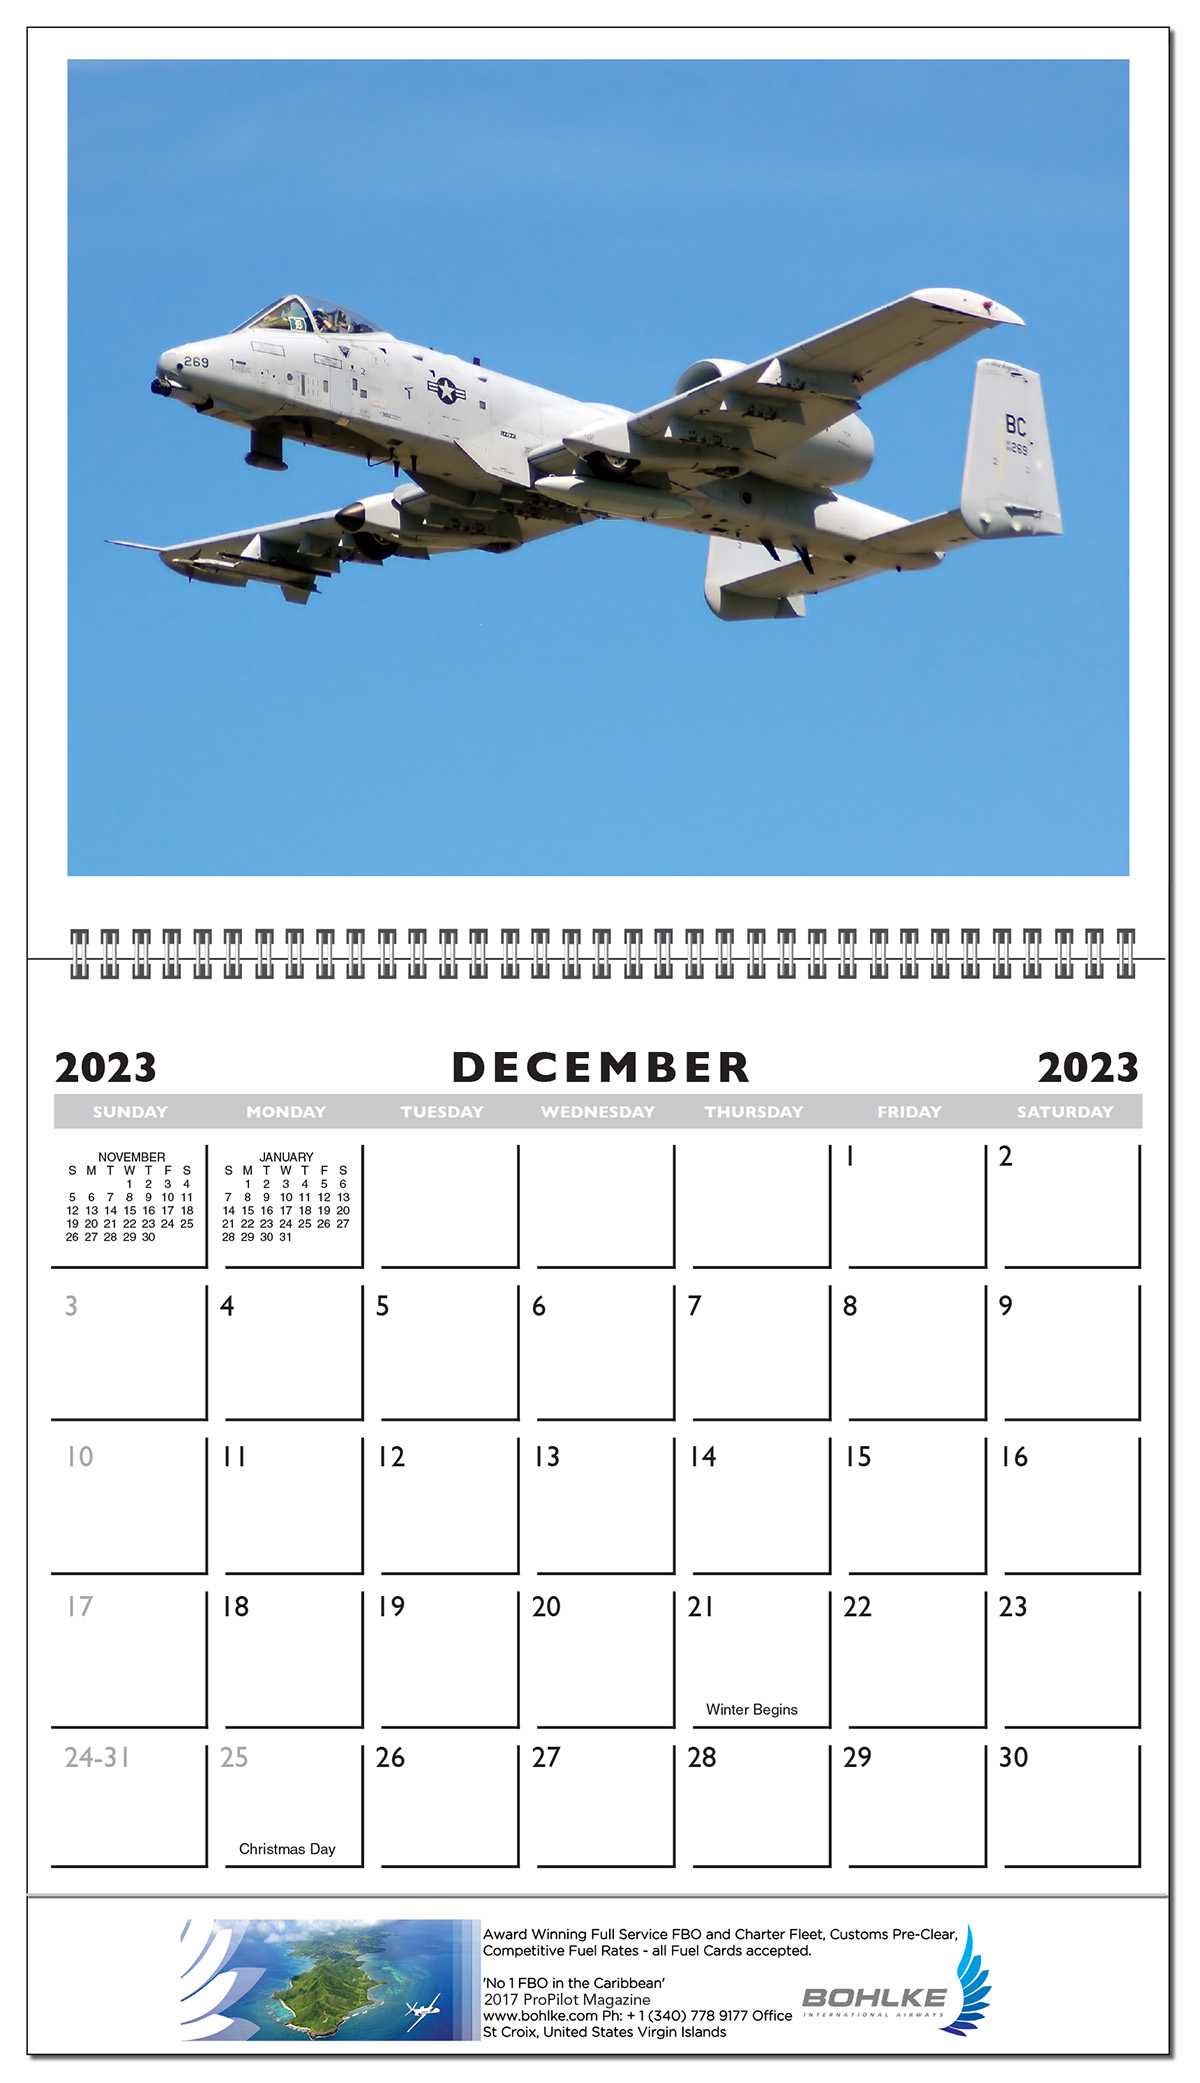 Military & Classic Aircraft Calendar Calendar Company